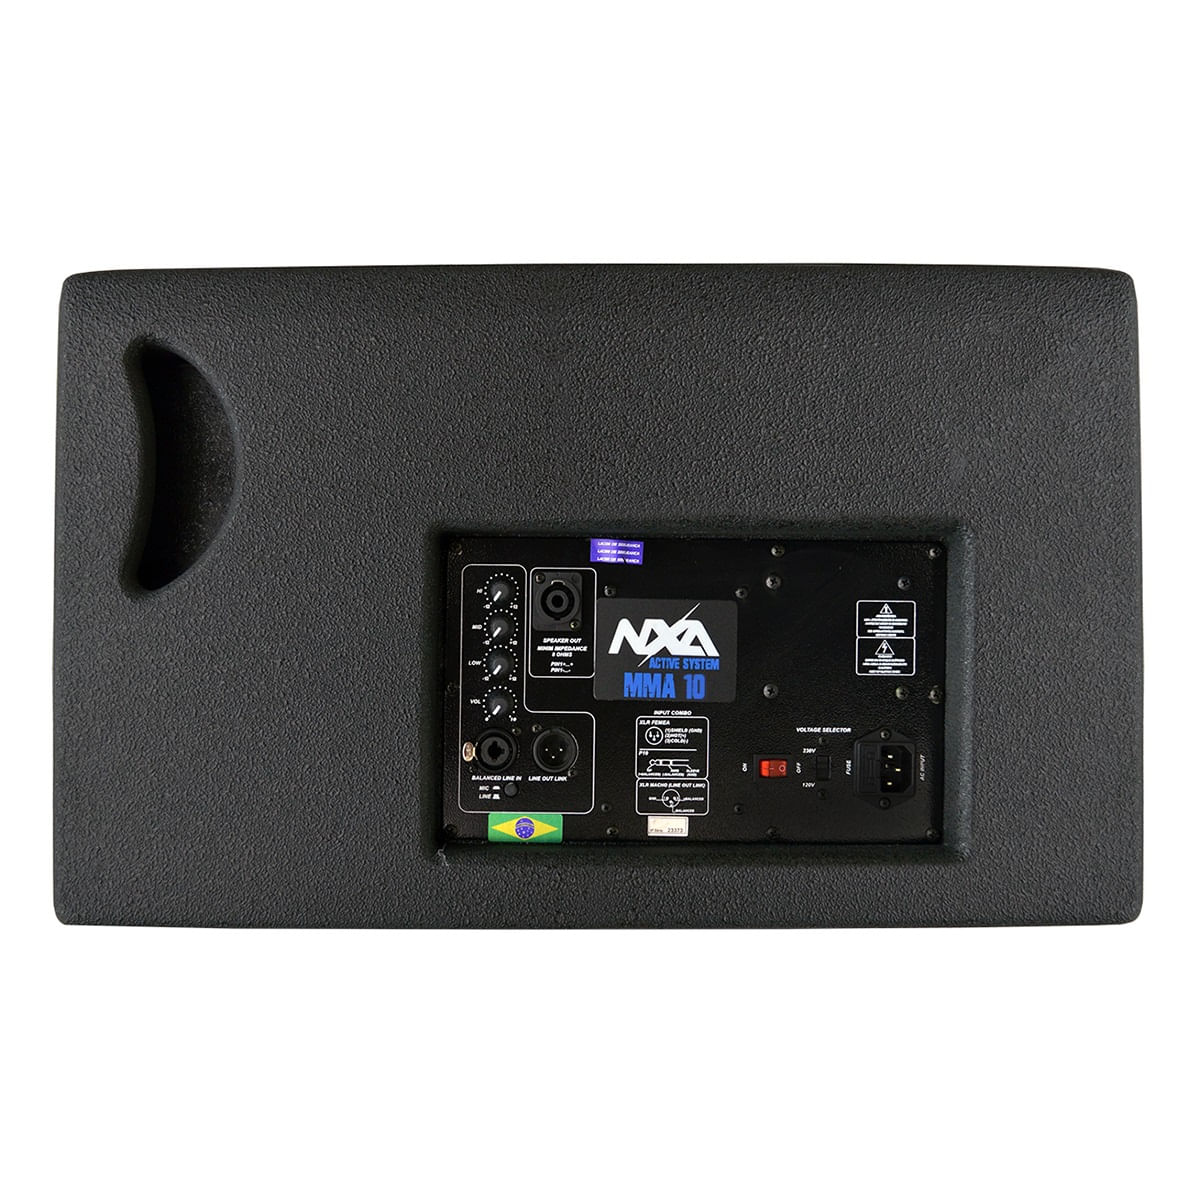 Monitor-Ativo-10-2-Vias-MMA-10---Nxa-1